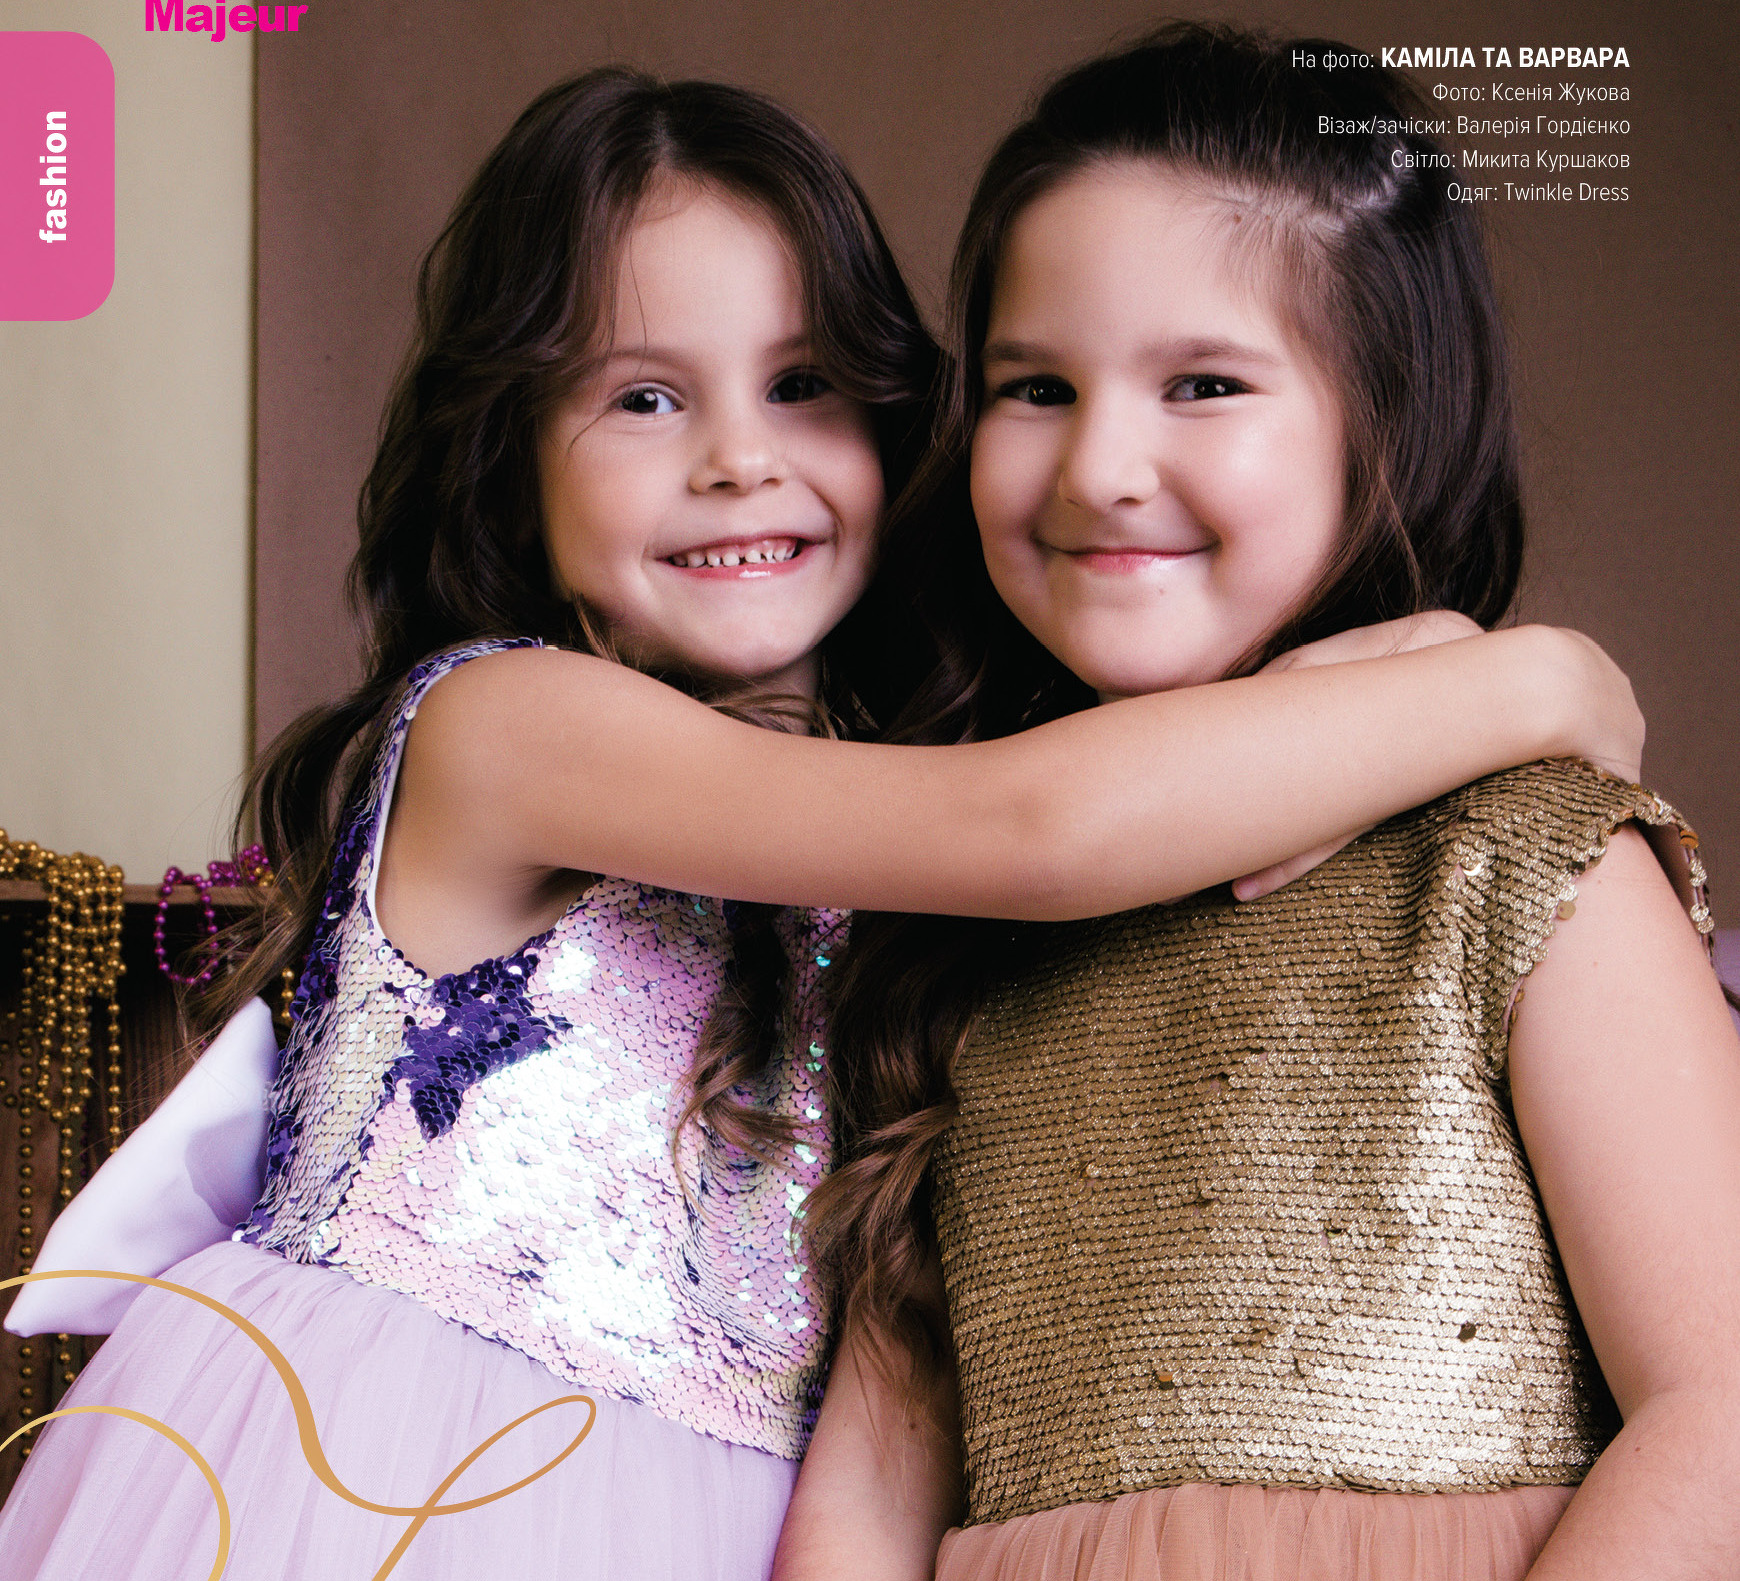 Fashion story для дитячого глянцевого журналу Majeur, одяг Twinkle Dress